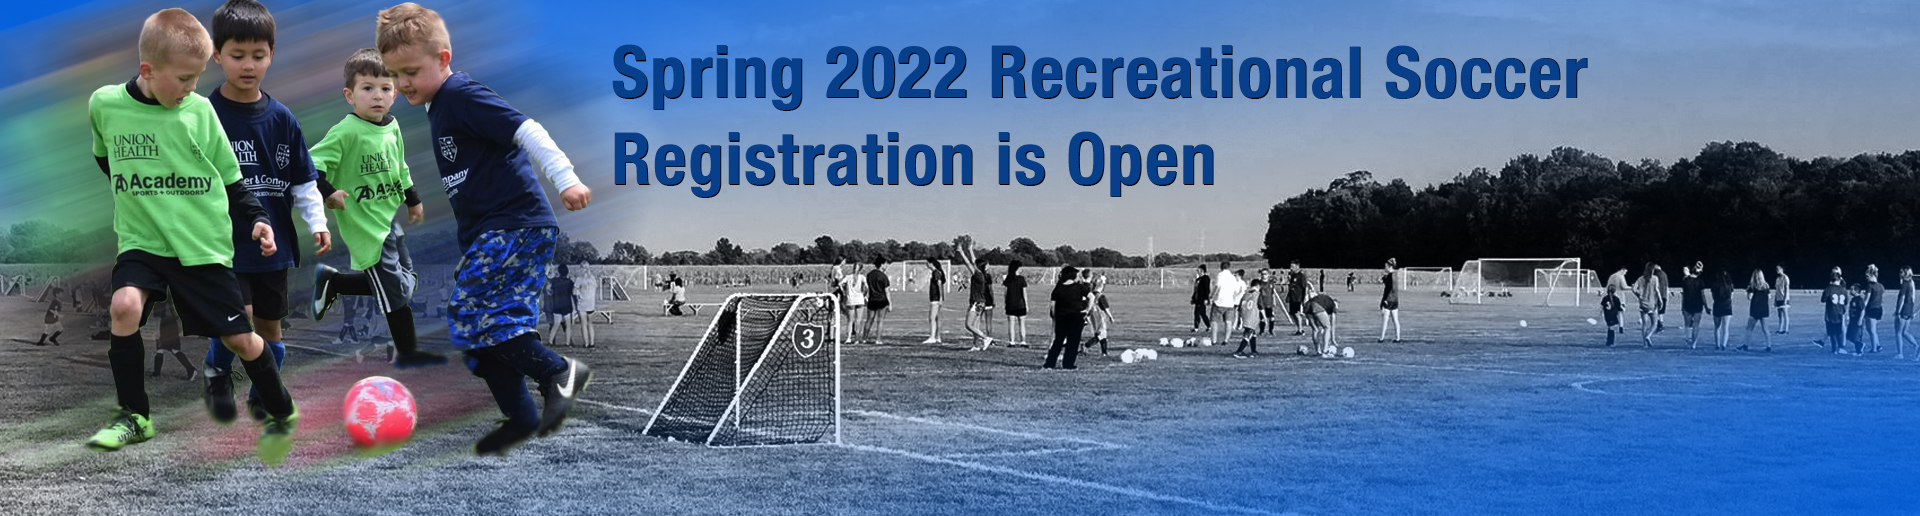 Spring 2022 Recreational Soccer